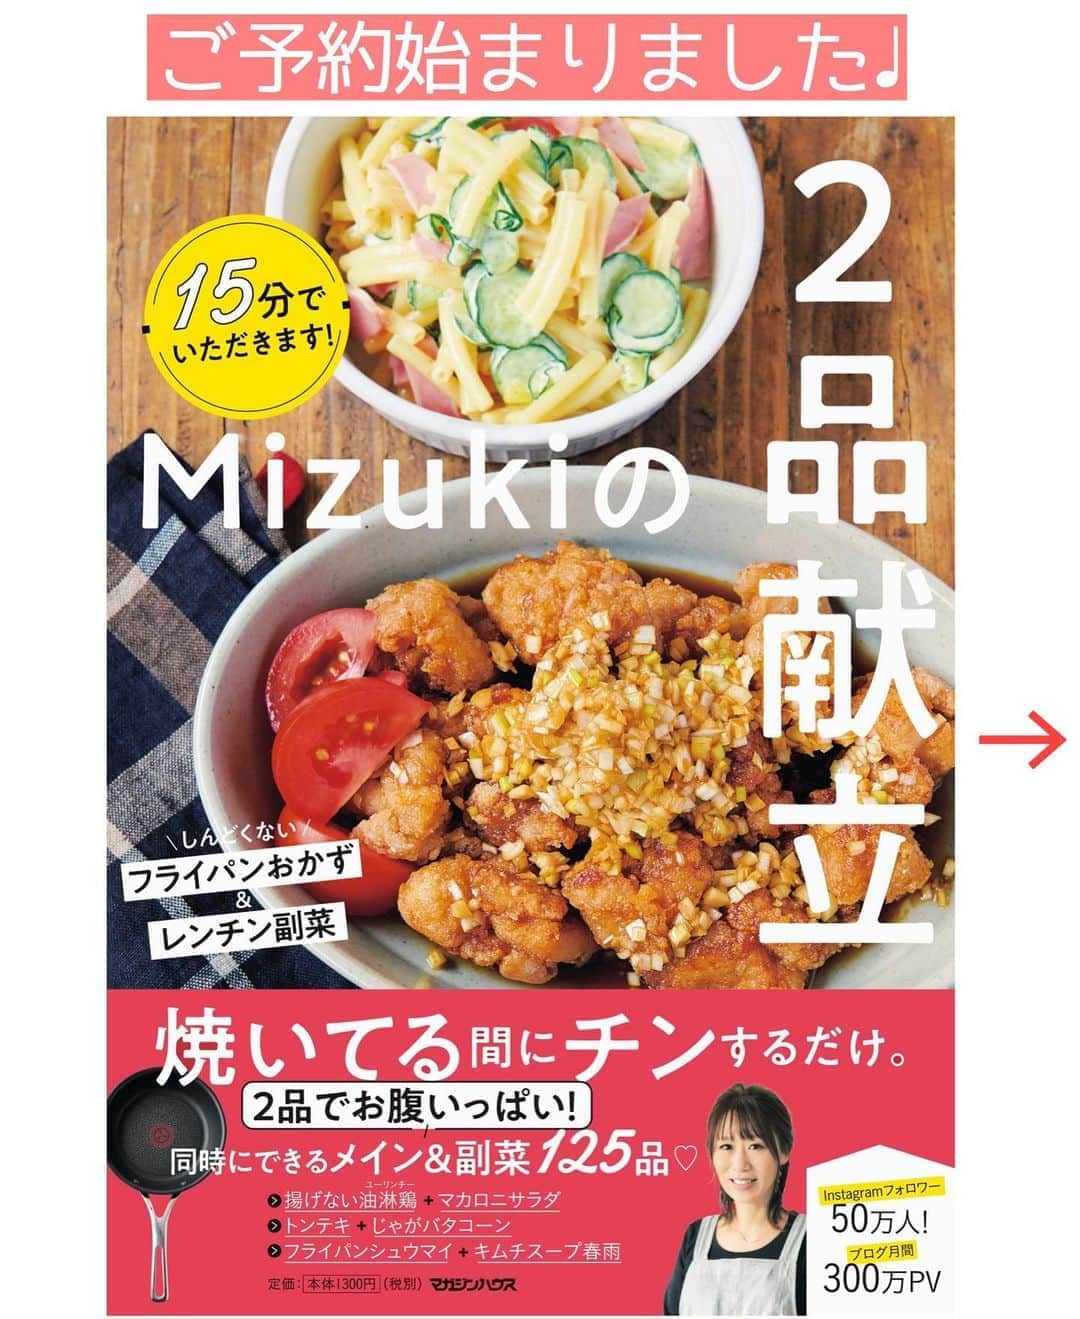 Mizuki【料理ブロガー・簡単レシピ】さんのインスタグラム写真 - (Mizuki【料理ブロガー・簡単レシピ】Instagram)「・﻿ 【レシピ】ーーーーーーーーーーーーーー﻿ ♡レンジde簡単♡さつまいもの甘辛煮♡﻿ ーーーーーーーーーーーーーーーーーーー﻿ ﻿ ﻿ ﻿ おはようございます(*^^*)﻿ ﻿ 今日はレンチン副菜レシピ☆﻿ ［さつまいもの甘辛煮］を﻿ ご紹介させていただきます♡﻿ ほっこりと甘い煮物は﻿ 箸休めやお弁当にぴったりですよ〜♩﻿ ﻿ 作り方は超簡単(*´艸`)﻿ ほぼレンジにおまかせ♡﻿ 仕上げにバターを加えると﻿ う〜んとコクがアップします♩﻿ (時間に余裕があれば﻿ 一度冷ますとより美味しい♡)﻿ ﻿ ﻿ ﻿ ＿＿＿＿＿＿＿＿＿＿＿＿＿＿＿＿＿＿＿＿﻿ 【2〜3人分】﻿ さつまいも...1本(200g)﻿ ●水...200ml﻿ ●砂糖...大1.5﻿ ●醤油...大1﻿ バター...5g﻿ (あれば)黒ごま...適量﻿ ﻿ 1.さつまいもは1cm厚さの輪切り(大きければ半月切り)にし、水に3分晒して水気を切る。﻿ 2.耐熱ボウルに1と●を入れてふんわりラップし、600Wのレンジで7〜8分加熱する。﻿ 3.さつまいもが柔らかくなったらバターを加えて余熱で溶かし、ごまを振る。﻿ ￣￣￣￣￣￣￣￣￣￣￣￣￣￣￣￣￣￣￣￣﻿ ﻿ ﻿ 《ポイント》﻿ ♦︎さつまいもの種類により加熱時間を調節して下さい♩﻿ ♦︎一度冷ますとより美味しくなります♩﻿ ♦︎鍋で作るバージョンは2年前にブログアップしています♩﻿ ﻿ ﻿ ﻿ ﻿ ﻿ ﻿ _____________________________________﻿ 💓新刊予約開始しました💓﻿ Amazon予約キャンペーン実施中🎁﻿ ￣￣￣￣￣￣￣￣￣￣￣￣￣￣￣￣￣﻿ \15分でいただきます/﻿ #Mizukiの2品献立﻿ (9月24日発売・マガジンハウス)﻿ ﻿ 忙しい私たちには﻿ 2品くらいがちょうどいい！﻿ 『しんどくない献立、考えました』﻿ ￣￣￣￣￣￣￣￣￣￣￣￣￣￣￣￣﻿ ﻿ メインはフライパン﻿ 副菜はレンジ(又は和えるだけ)の2品献立💕﻿ メインを作っている合間にできる﻿ レンチン副菜を組み合わせることで﻿ 15分で2品が同時に完成します！﻿ (別腹デザートも掲載😂)﻿ ﻿ ﻿ 【contents】﻿ ーーーーーPART.1 ーーーーー﻿ 【Mizukiのお墨つき！２品献立ベスト10】﻿ 約15分でできる10献立をご紹介！﻿ メインは全部フライパン、副菜はレンチンor混ぜるだけ♡﻿ ﻿ ーーーーーPART.2 ーーーーー﻿ 【フライパンひとつ！今夜のメインおかず】﻿ 献立の主役になる肉や魚のおかず50品！﻿ Part3の副菜と組み合わせれば﻿ 献立のバリエーションが広がりますよ♩﻿ ﻿ ーーーーー PART.3 ーーーーー﻿ 【合間に作れる！ 野菜別かんたん副菜】﻿ レンチンor和えるだけの副菜レシピを﻿ 素材別にたっぷり収録♩﻿ ﻿ ーーーーー番外編ーーーーー﻿ 【ひとつで満足！ご飯＆麺】﻿ 【具だくさん！おかずスープ】﻿ 【オーブンいらずのおやつレシピ】﻿ ￣￣￣￣￣￣￣￣￣￣￣￣￣￣￣￣￣￣﻿ ﻿ ﻿ 🎁🎁🎁🎁🎁🎁🎁🎁🎁🎁🎁🎁﻿ Amazon予約プレゼントキャンペーン﻿ 🎁🎁🎁🎁🎁🎁🎁🎁🎁🎁🎁🎁﻿ ﻿ 皆様に感謝の気持ちを込めて﻿ ご用意させていただきました✨﻿ 私が普段から愛用している﻿ 本当に使いやすいおすすめグッズです💕﻿ ﻿ ＿＿＿＿＿＿＿＿＿＿＿＿＿＿＿＿＿﻿ 新刊【2品献立】をAmazonで予約し﻿ インスタにアップして下さった方に﻿ 抽選で［フライパン］or［ボールセット］を﻿ プレゼントさせていただきます♩﻿ ￣￣￣￣￣￣￣￣￣￣￣￣￣￣￣￣￣﻿ ﻿ ✅【インスタ応募方法▼】﻿ ①本の表紙の画像を1枚目に、﻿ Amazonで予約したことがわかる画像を﻿ 2枚目に貼り付け(どちらもスクショでOK)﻿ ［#Mizukiの2品献立 ］のハッシュタグを付けて投稿！﻿ 以上で応募完了です(*^^*)﻿ (詳しくは最後のPicをご覧下さい😊)﻿ ﻿ ￣￣￣￣￣￣￣￣￣￣￣￣￣￣￣￣￣￣﻿ ハイライトにリンク🔗あります💓﻿ ﻿ ﻿ ﻿ ﻿ ﻿ ﻿ ￣￣￣￣￣￣￣￣￣￣￣￣￣￣￣￣￣￣﻿ レシピを作って下さった際や﻿ レシピ本についてのご投稿には﻿ タグ付け( @mizuki_31cafe )して﻿ お知らせいただけると嬉しいです😊💕﻿ ＿＿＿＿＿＿＿＿＿＿＿＿＿＿＿＿＿＿﻿ ﻿ ﻿ ﻿ ﻿ ﻿ #さつまいも#レンジ#副菜#お弁当#作り置き#煮物#Mizuki#簡単レシピ#時短レシピ#節約レシピ#料理#レシピ#フーディーテーブル#マカロニメイト#おうちごはん#デリスタグラマー#料理好きな人と繋がりたい#食べ物#料理記録#おうちごはんlover#写真好きな人と繋がりたい#foodpic#cooking#recipe#lin_stagrammer#foodporn#yummy#さつまいもの甘辛煮m」9月7日 8時24分 - mizuki_31cafe